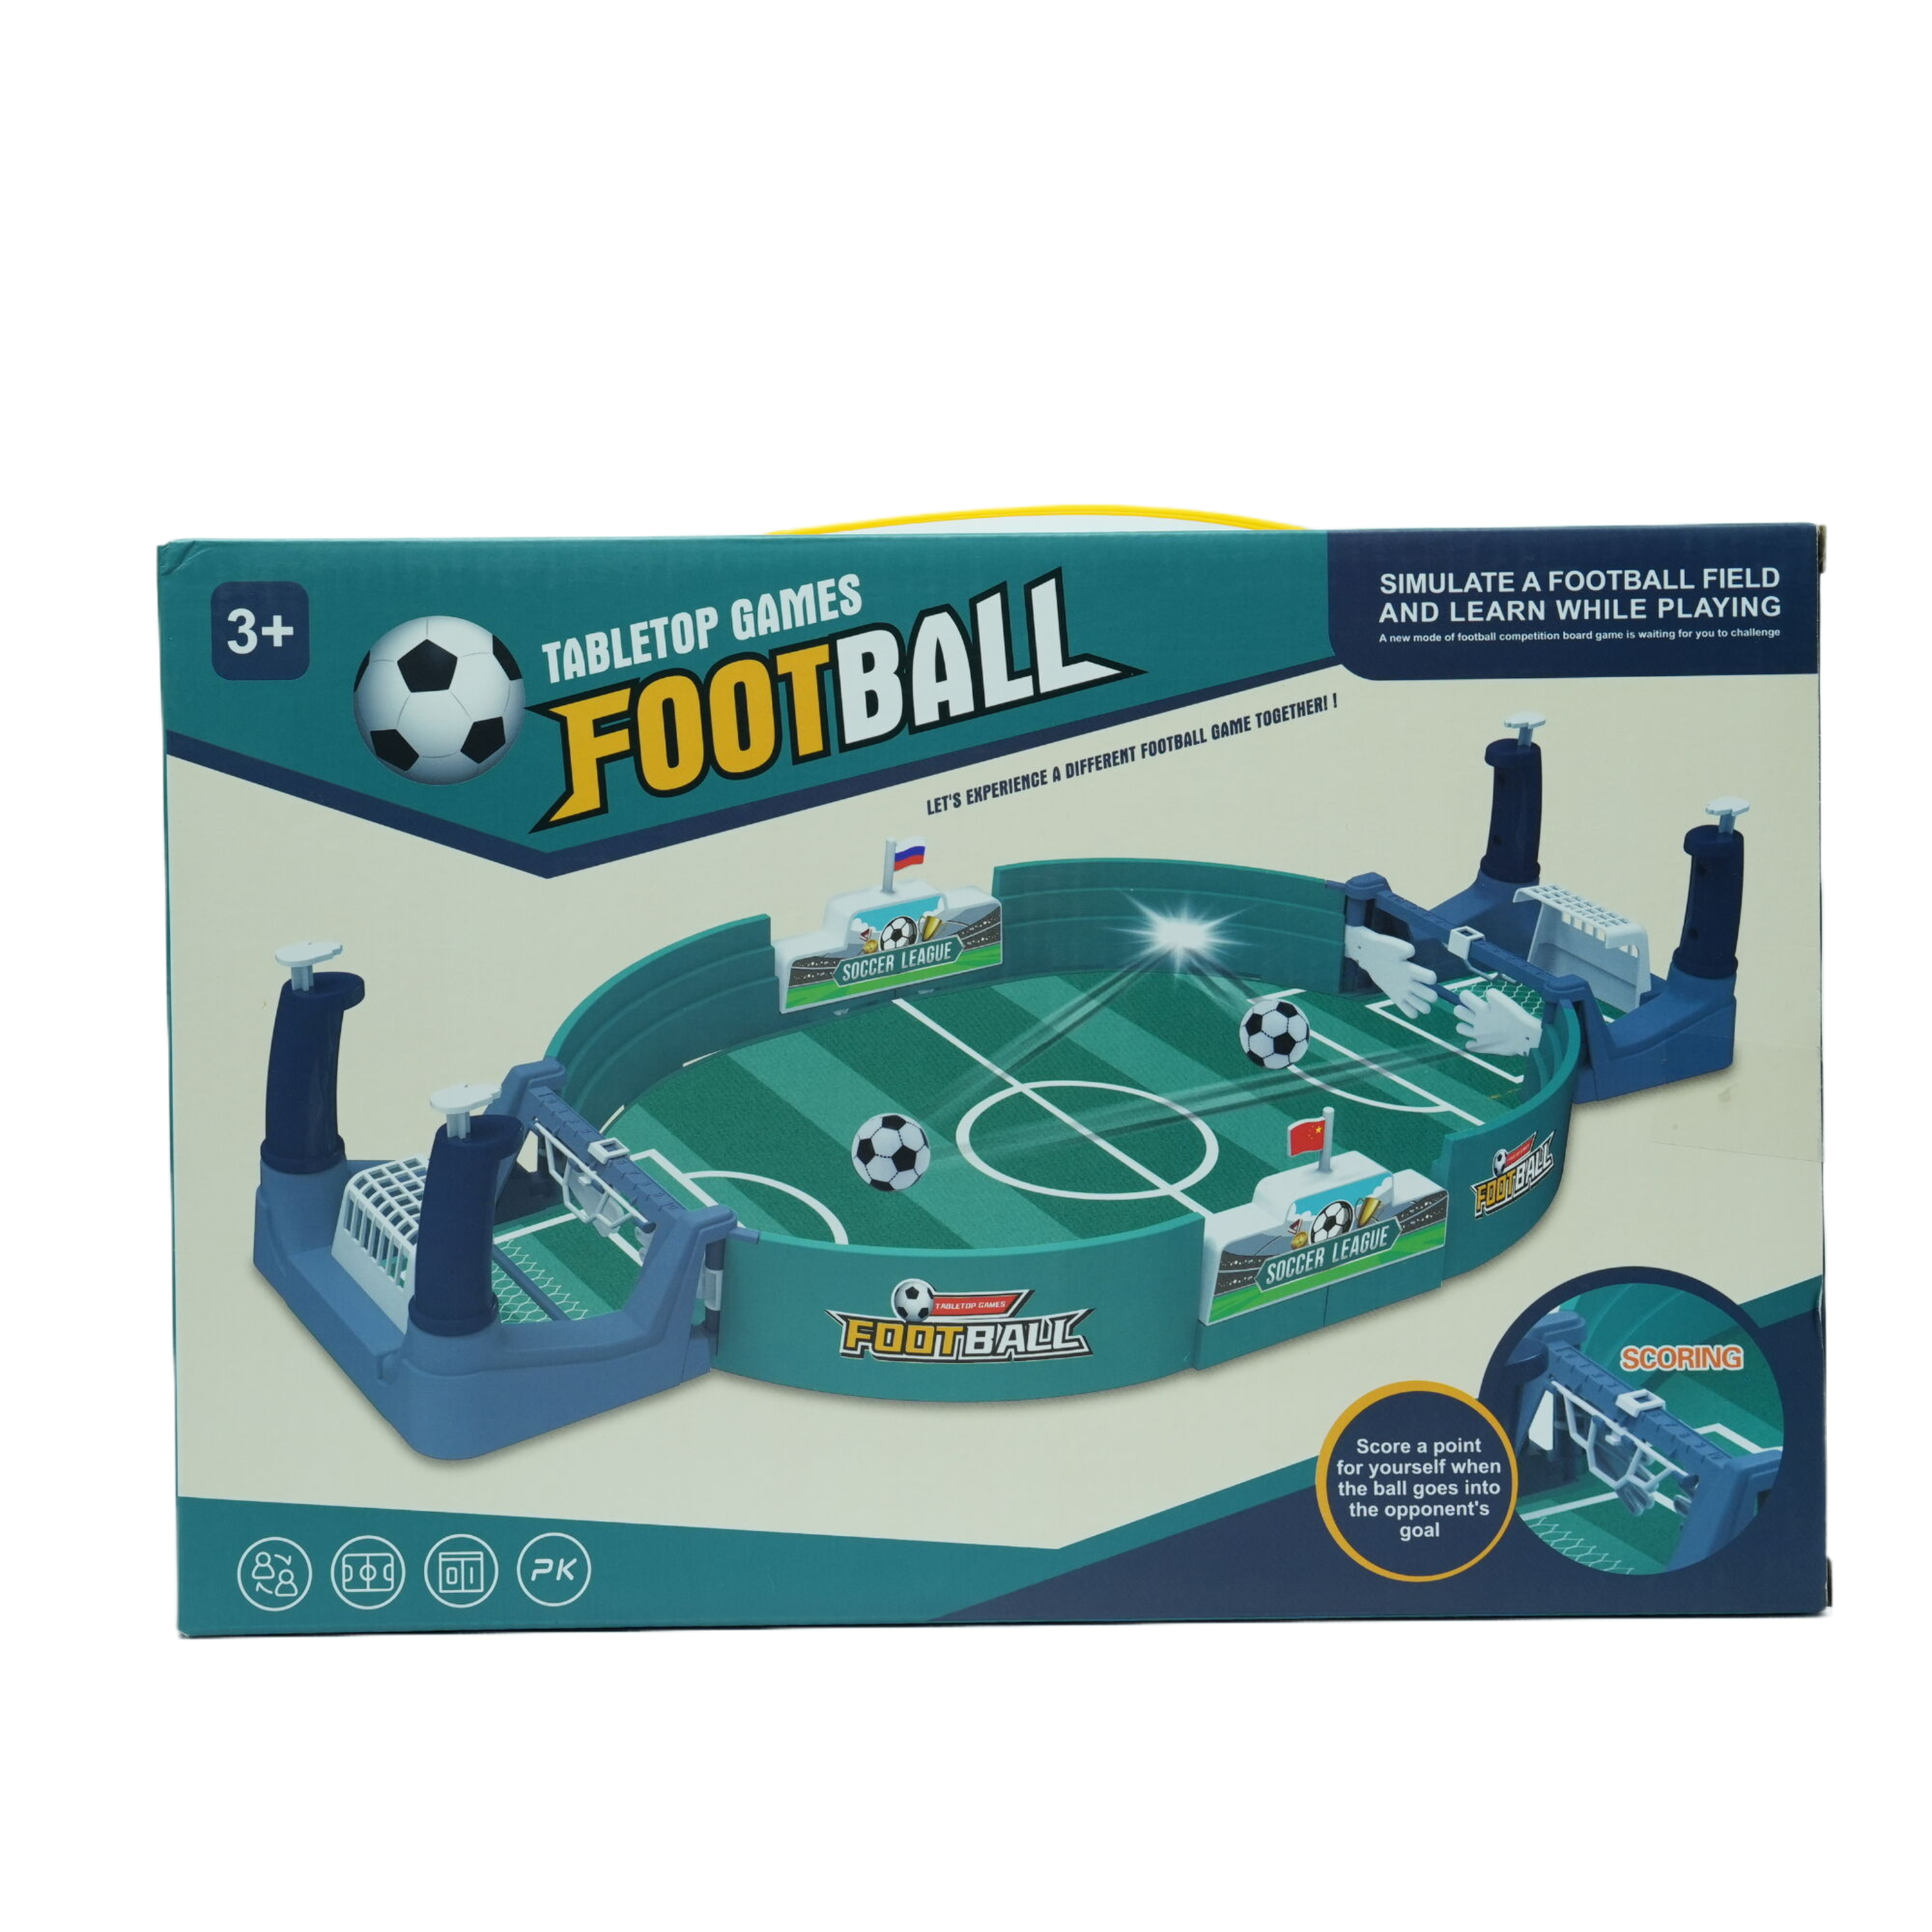 08-Desktop Football Fighter